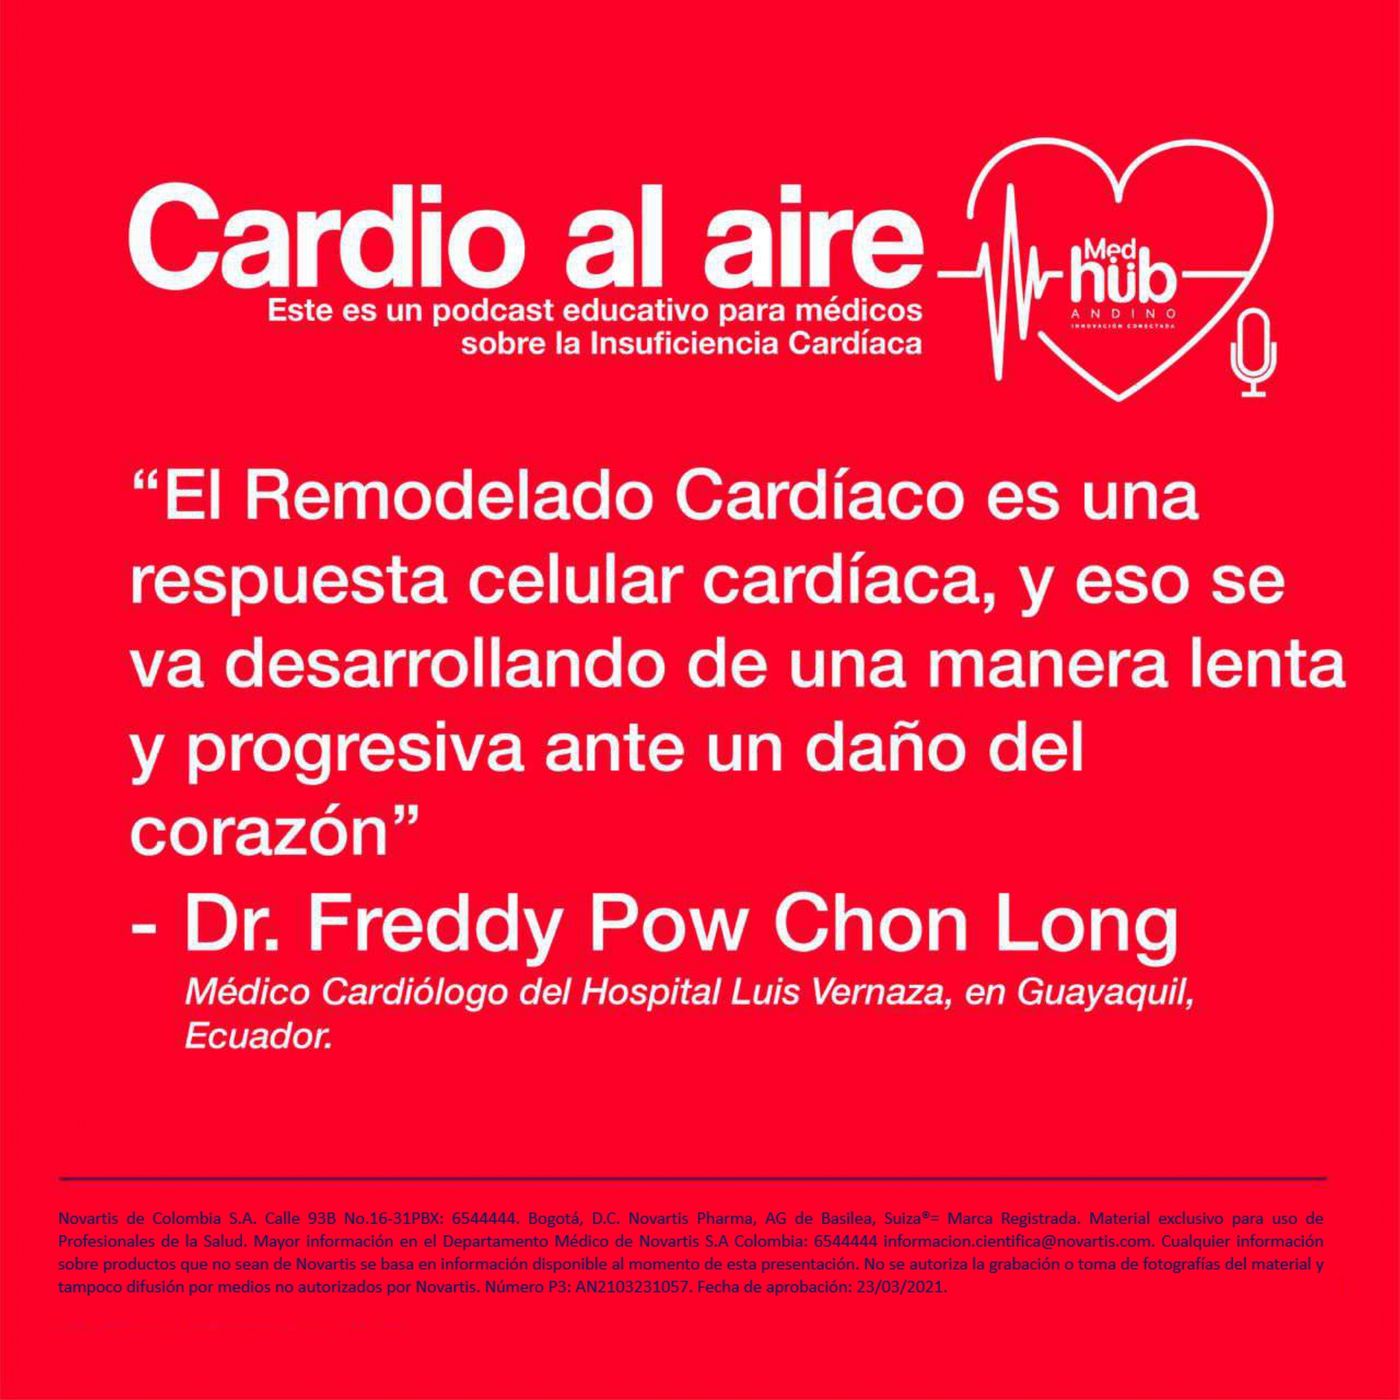 EP 4. Cardio al Aire: Uso del Ecocardiograma en IC con el Dr. Freddy Pow Chon Long